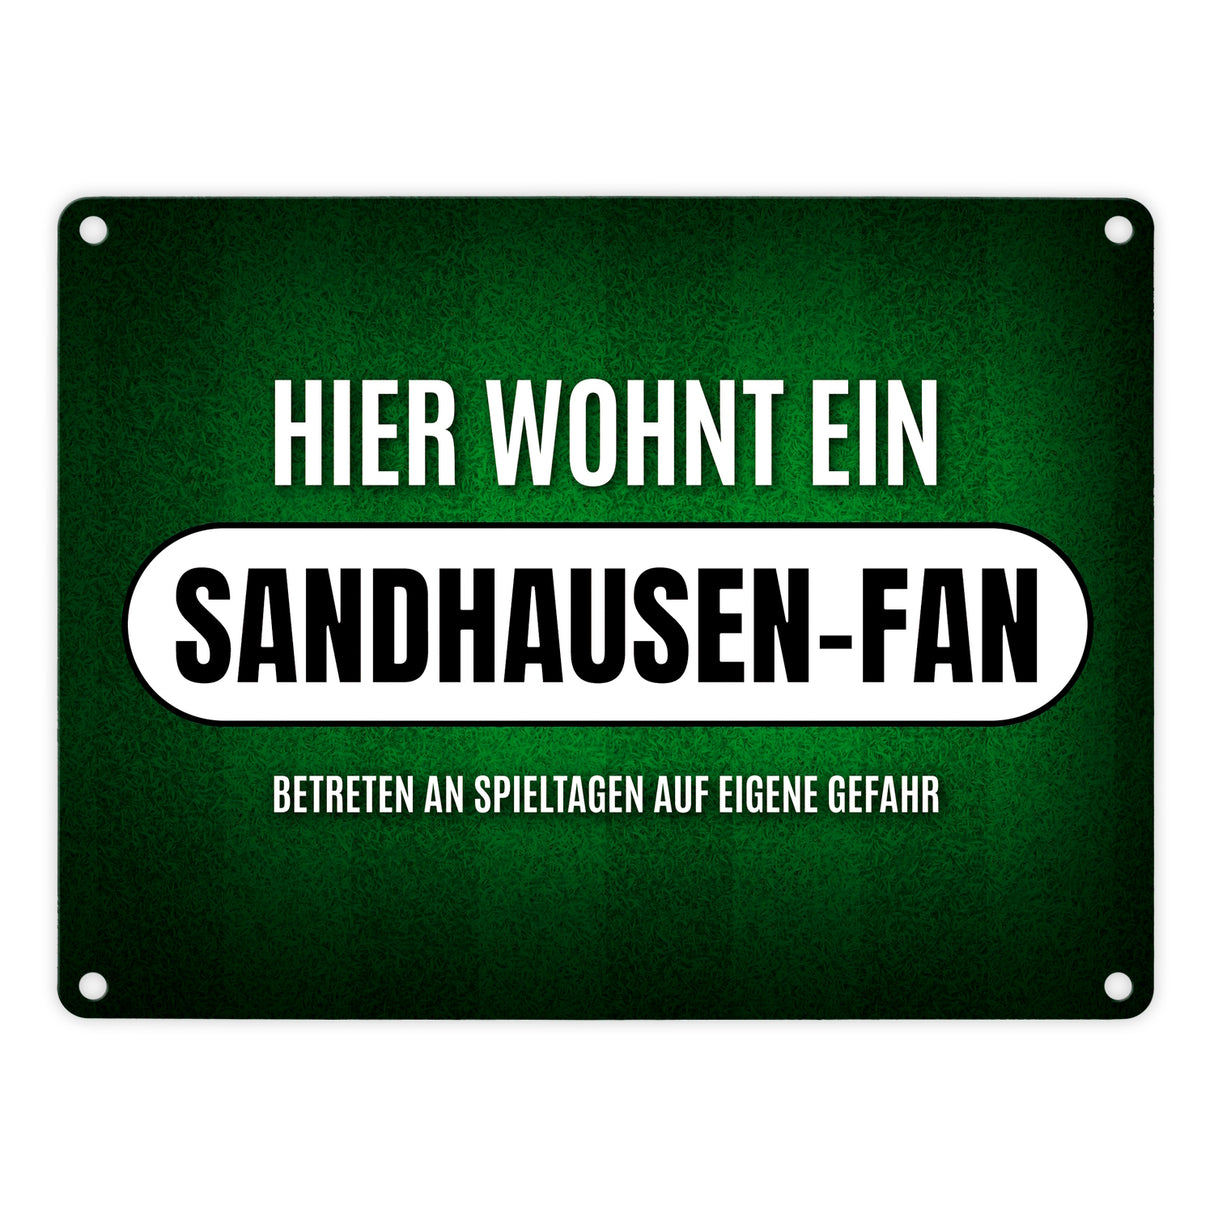 Hier wohnt ein Sandhausen-Fan Metallschild mit Rasen Motiv